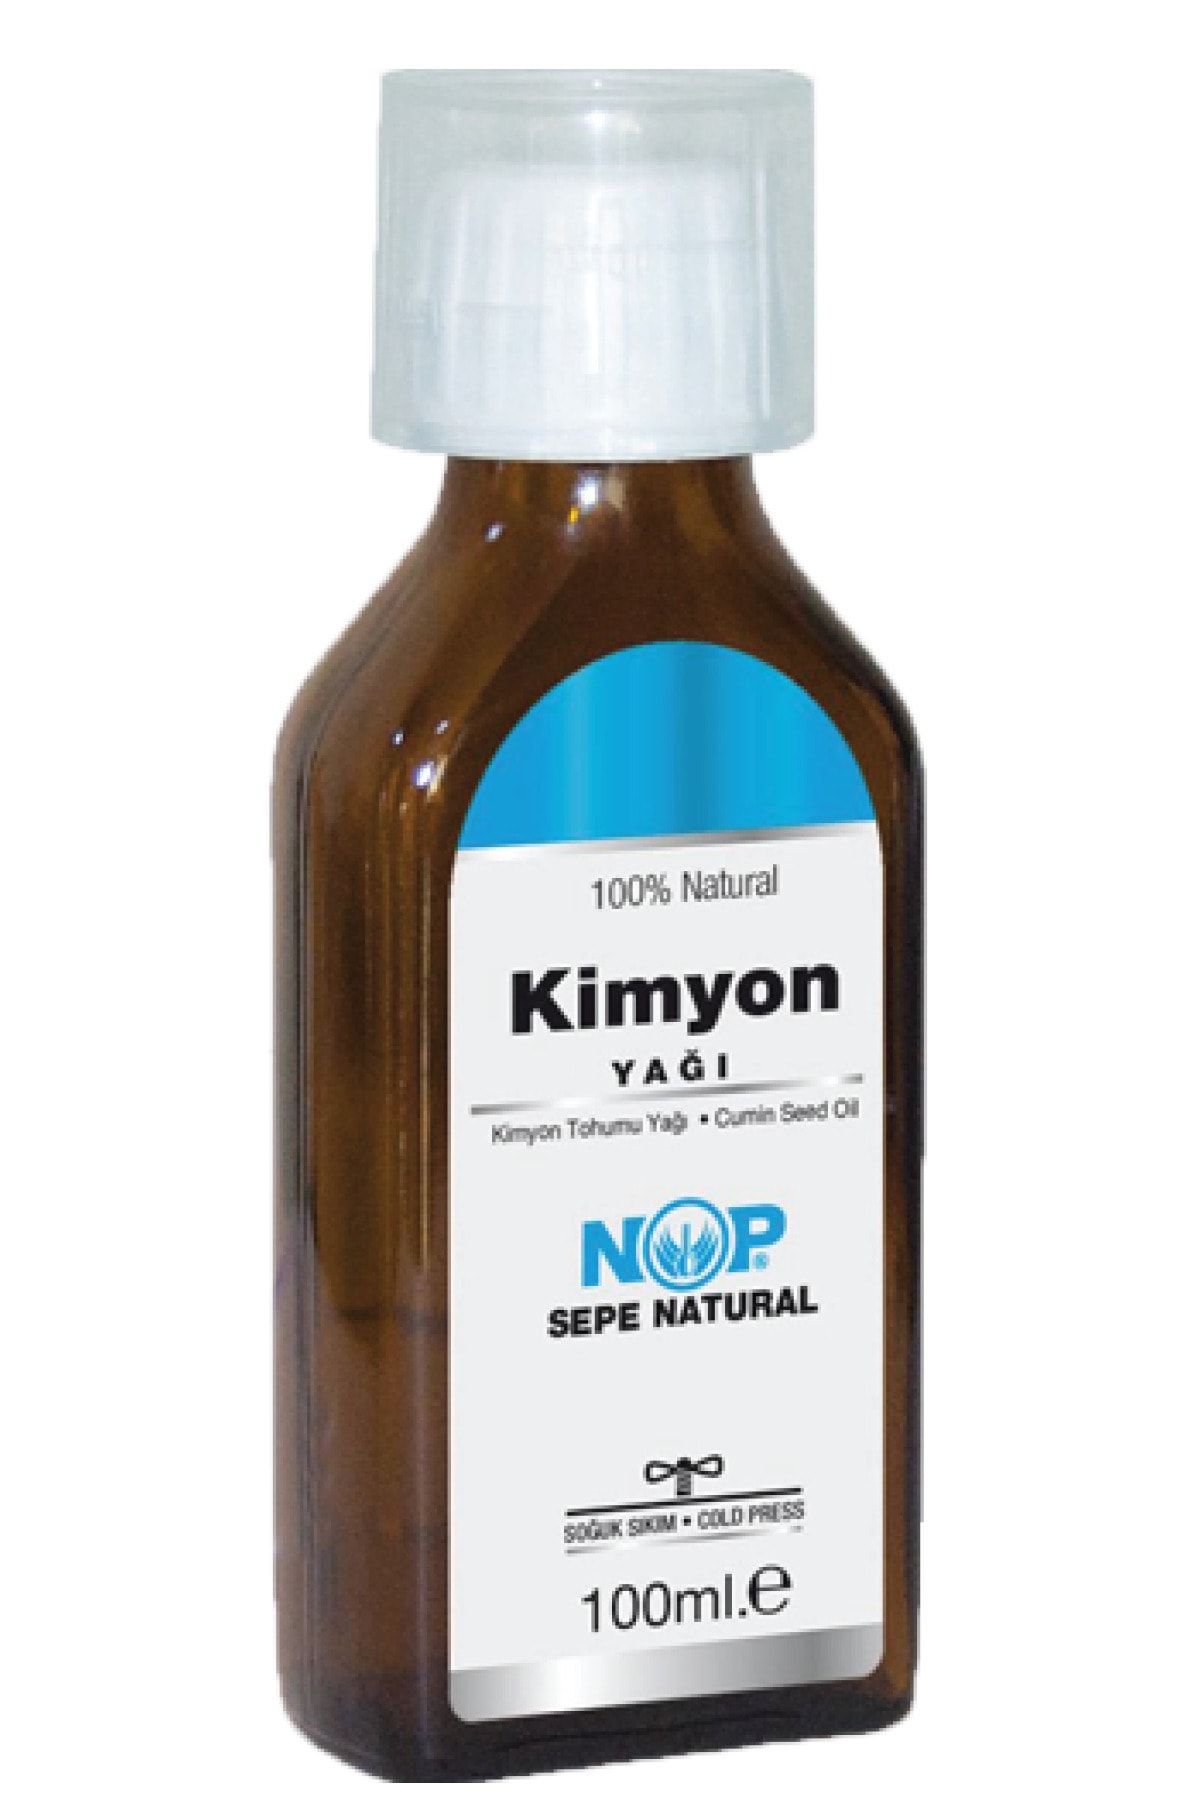 Sepe Natural Nop Kimyon Yağı 100 ml Saf Soğuk Sıkım Cumin Seed Oil